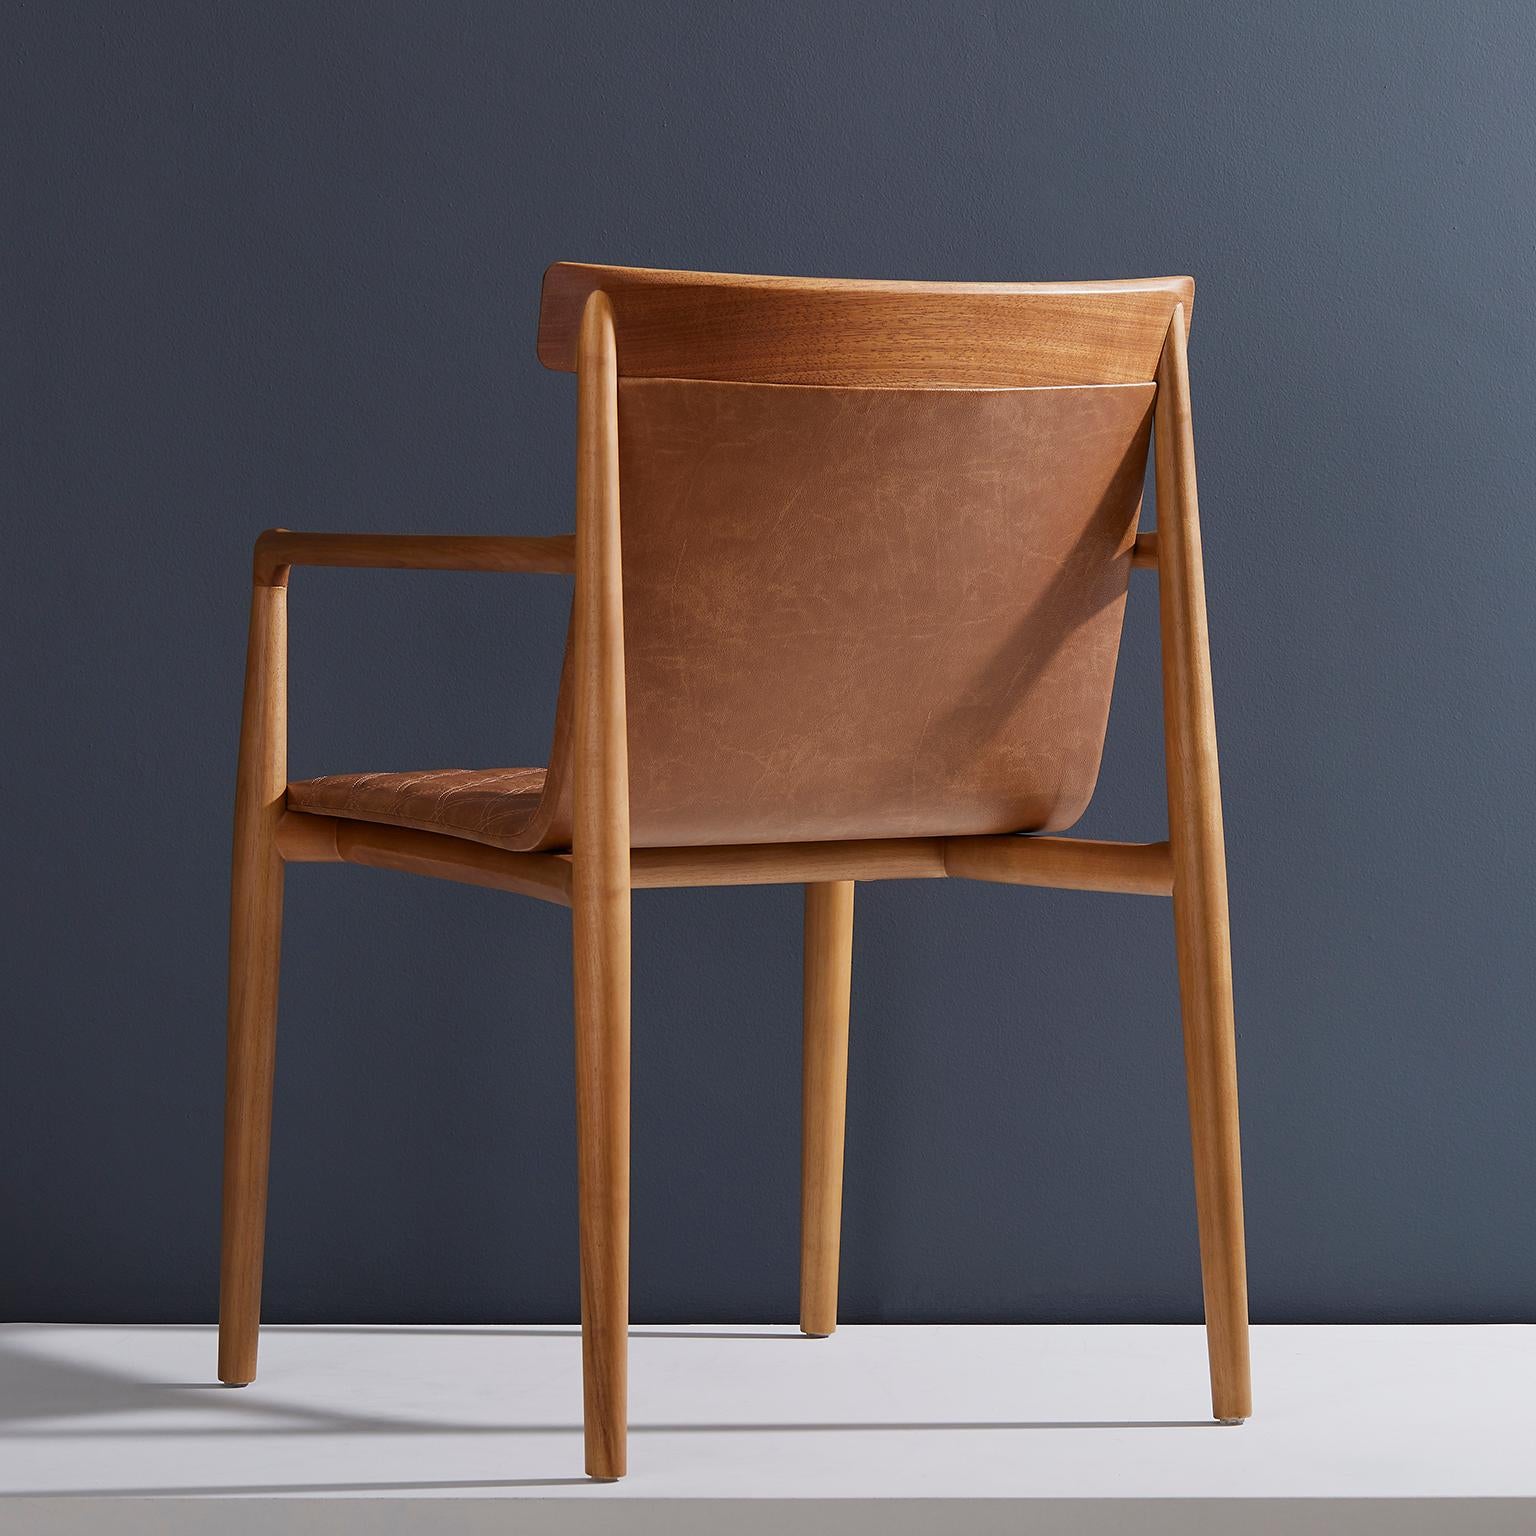 Moderne Chaise contemporaine en bois massif naturel, recouverte de cuir, avec accoudoirs en vente